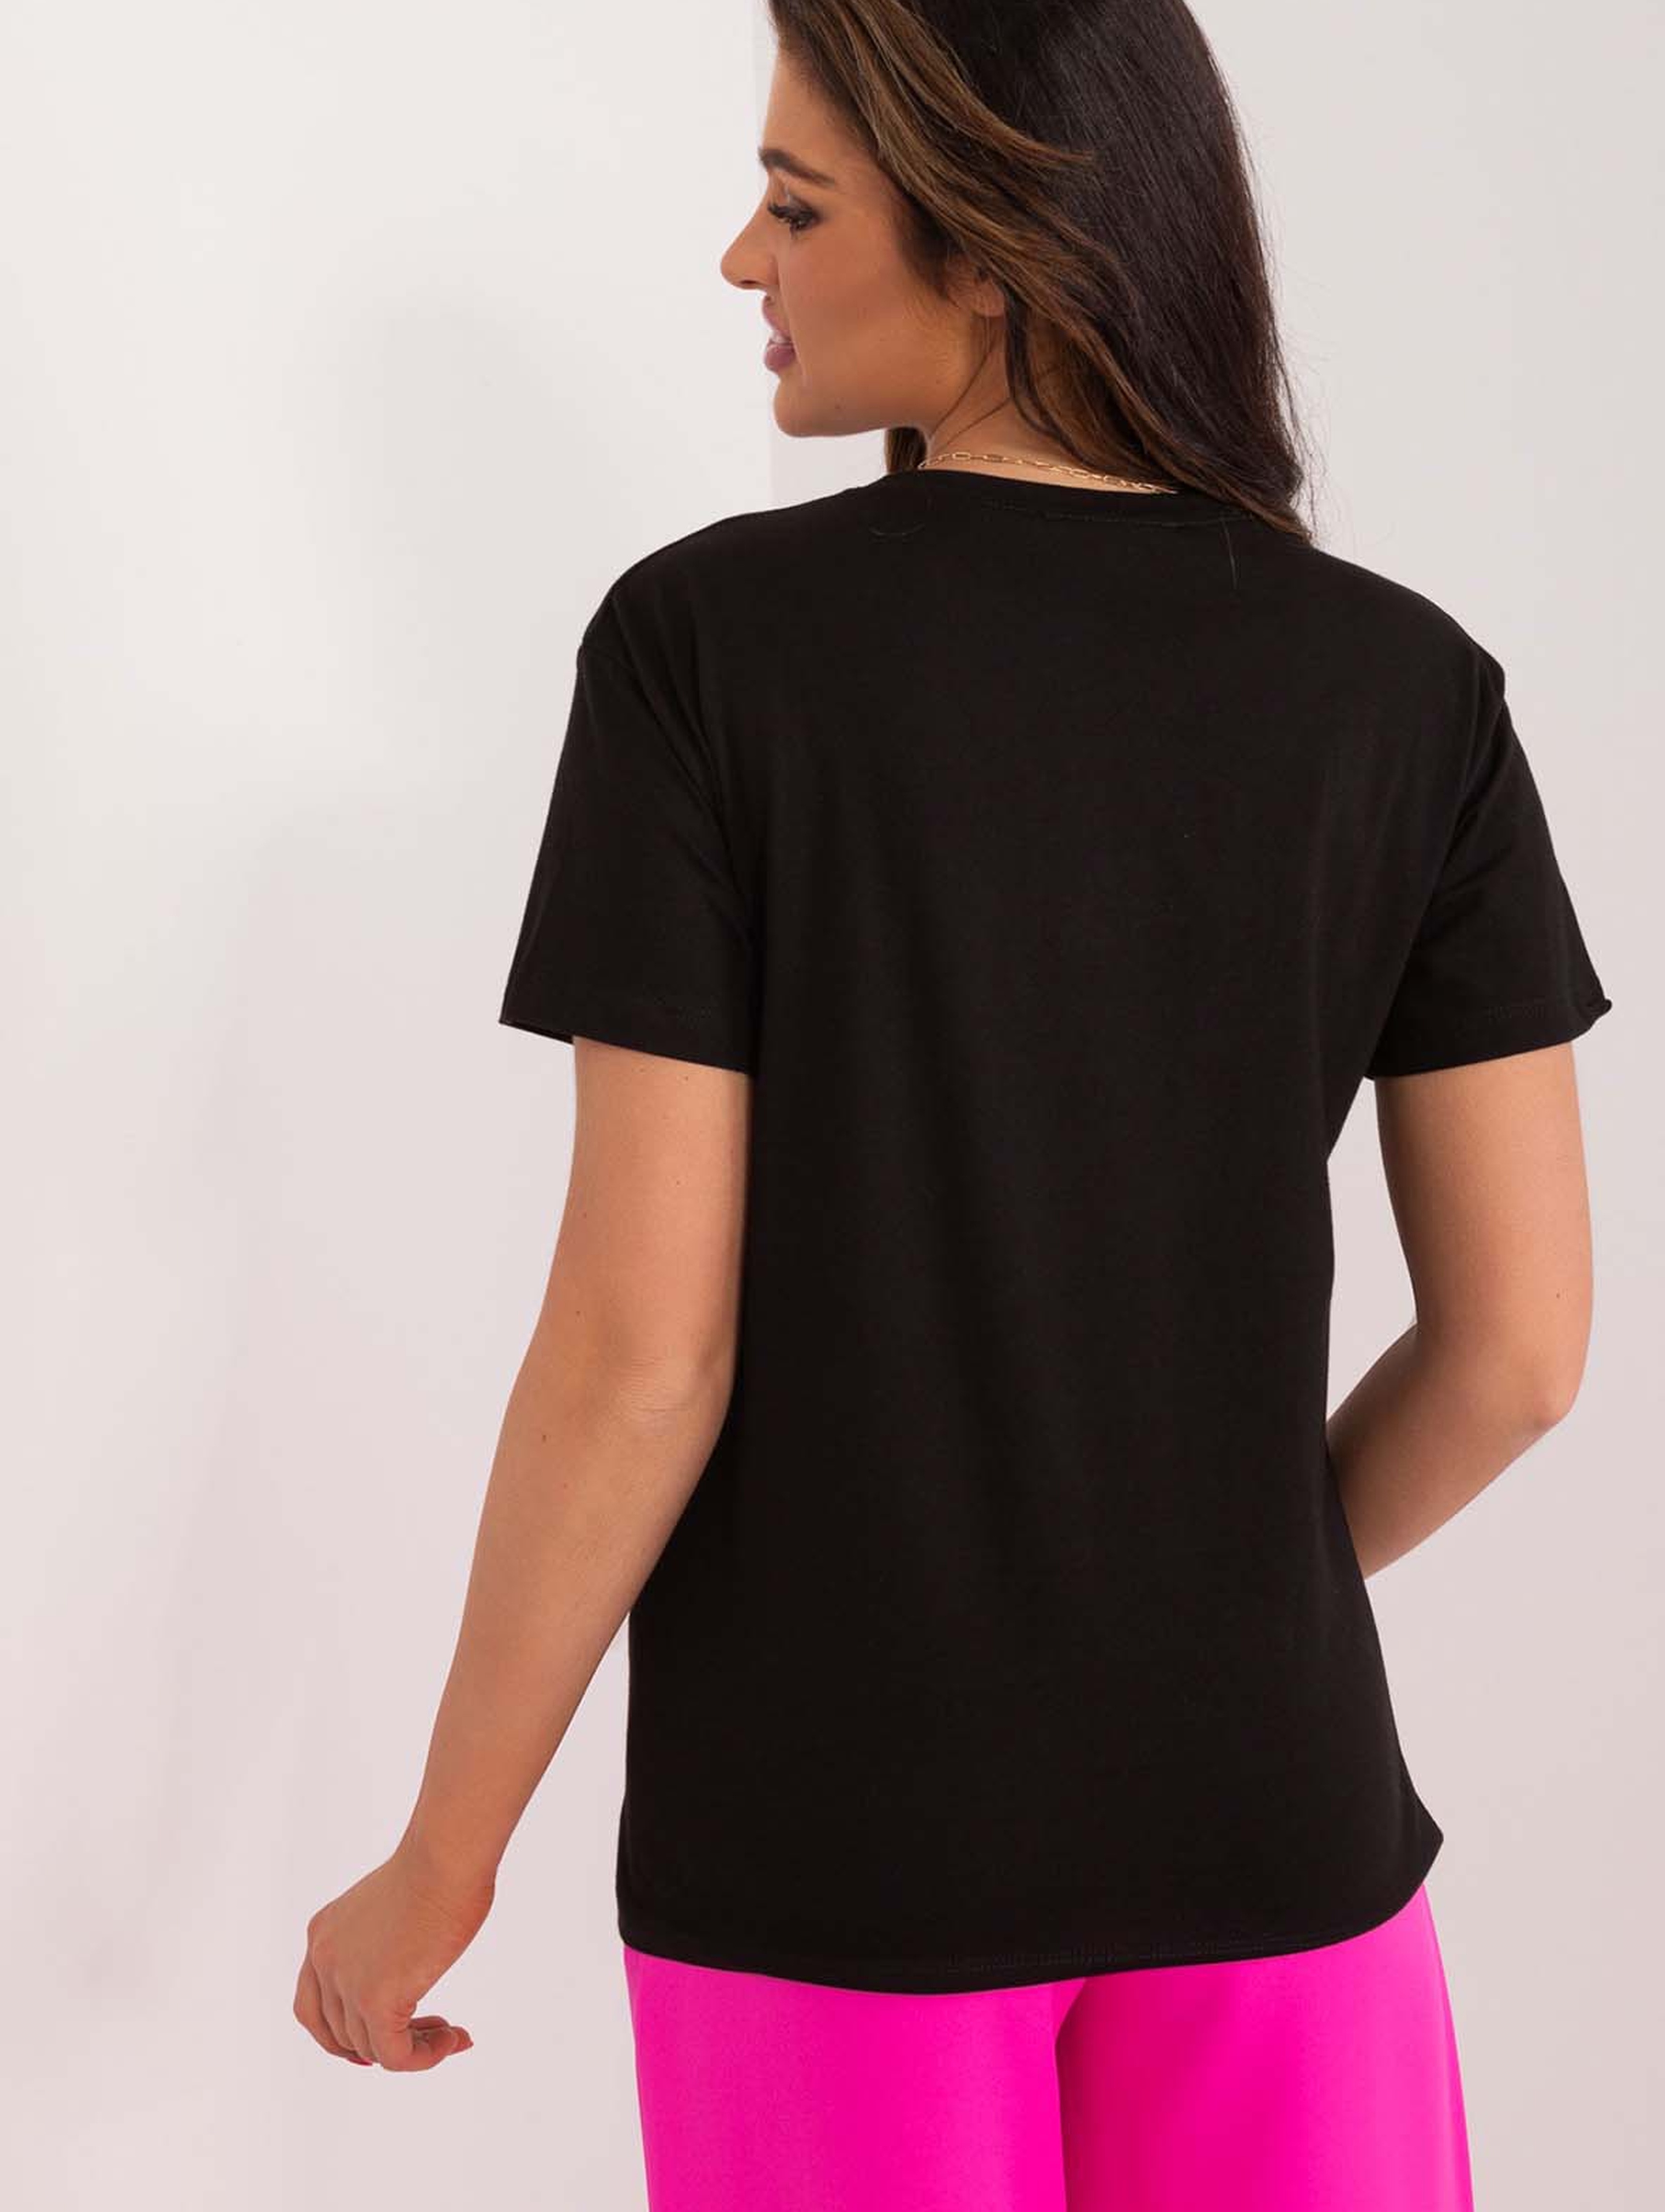 Czarny bawełniany t-shirt damski z aplikacjami